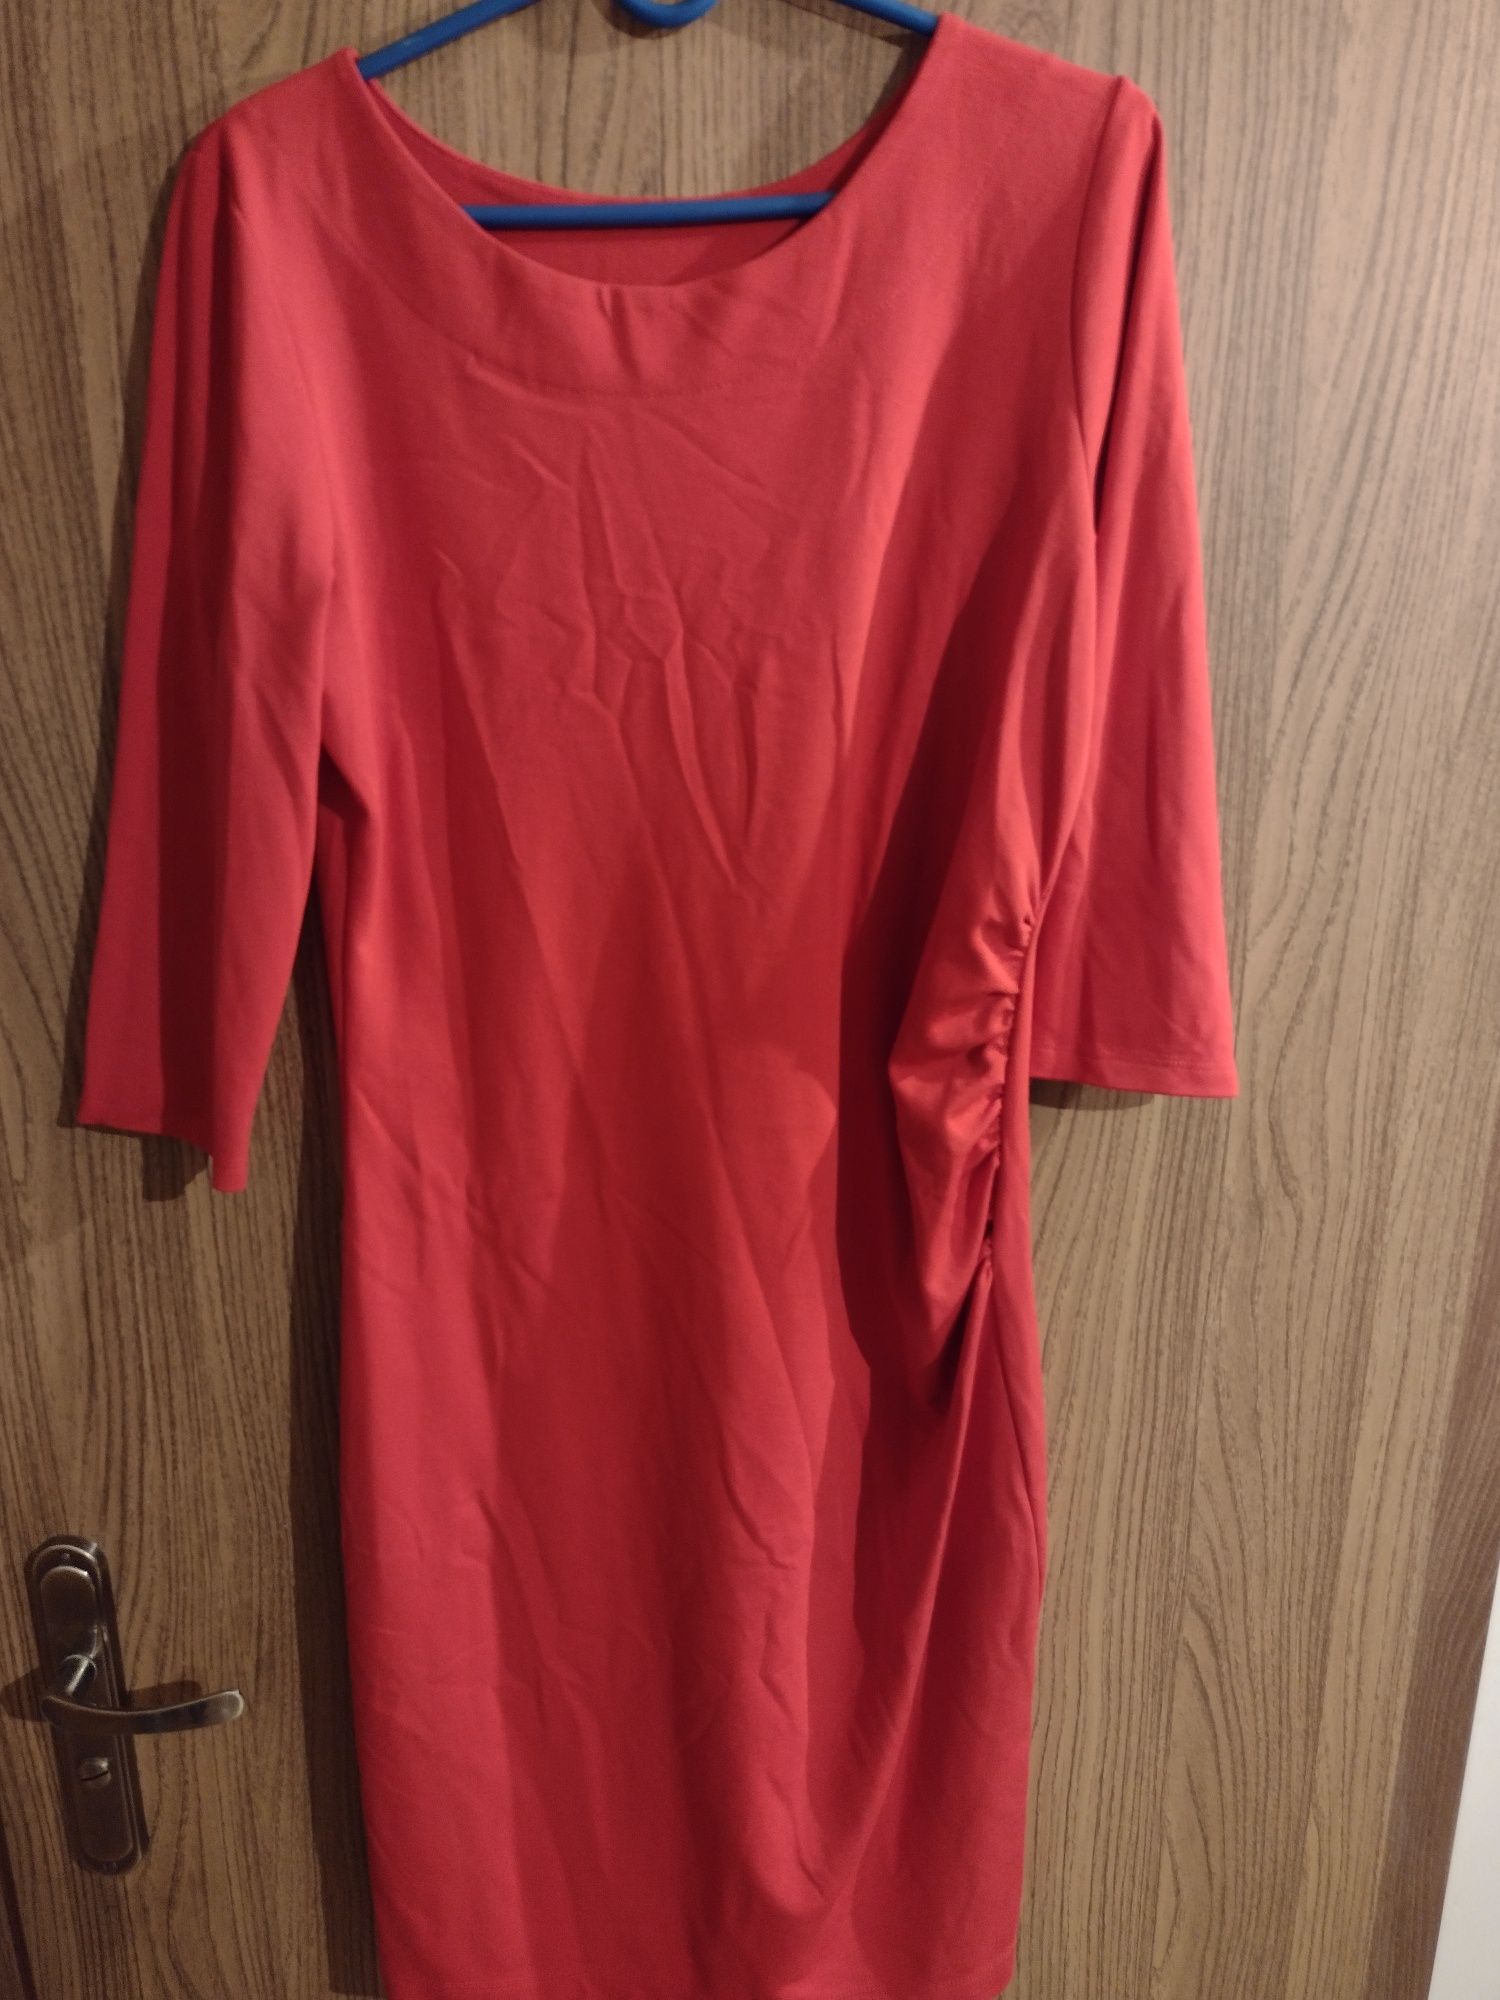 Śliczna czerwona dzianinowa sukienka midi,m/l